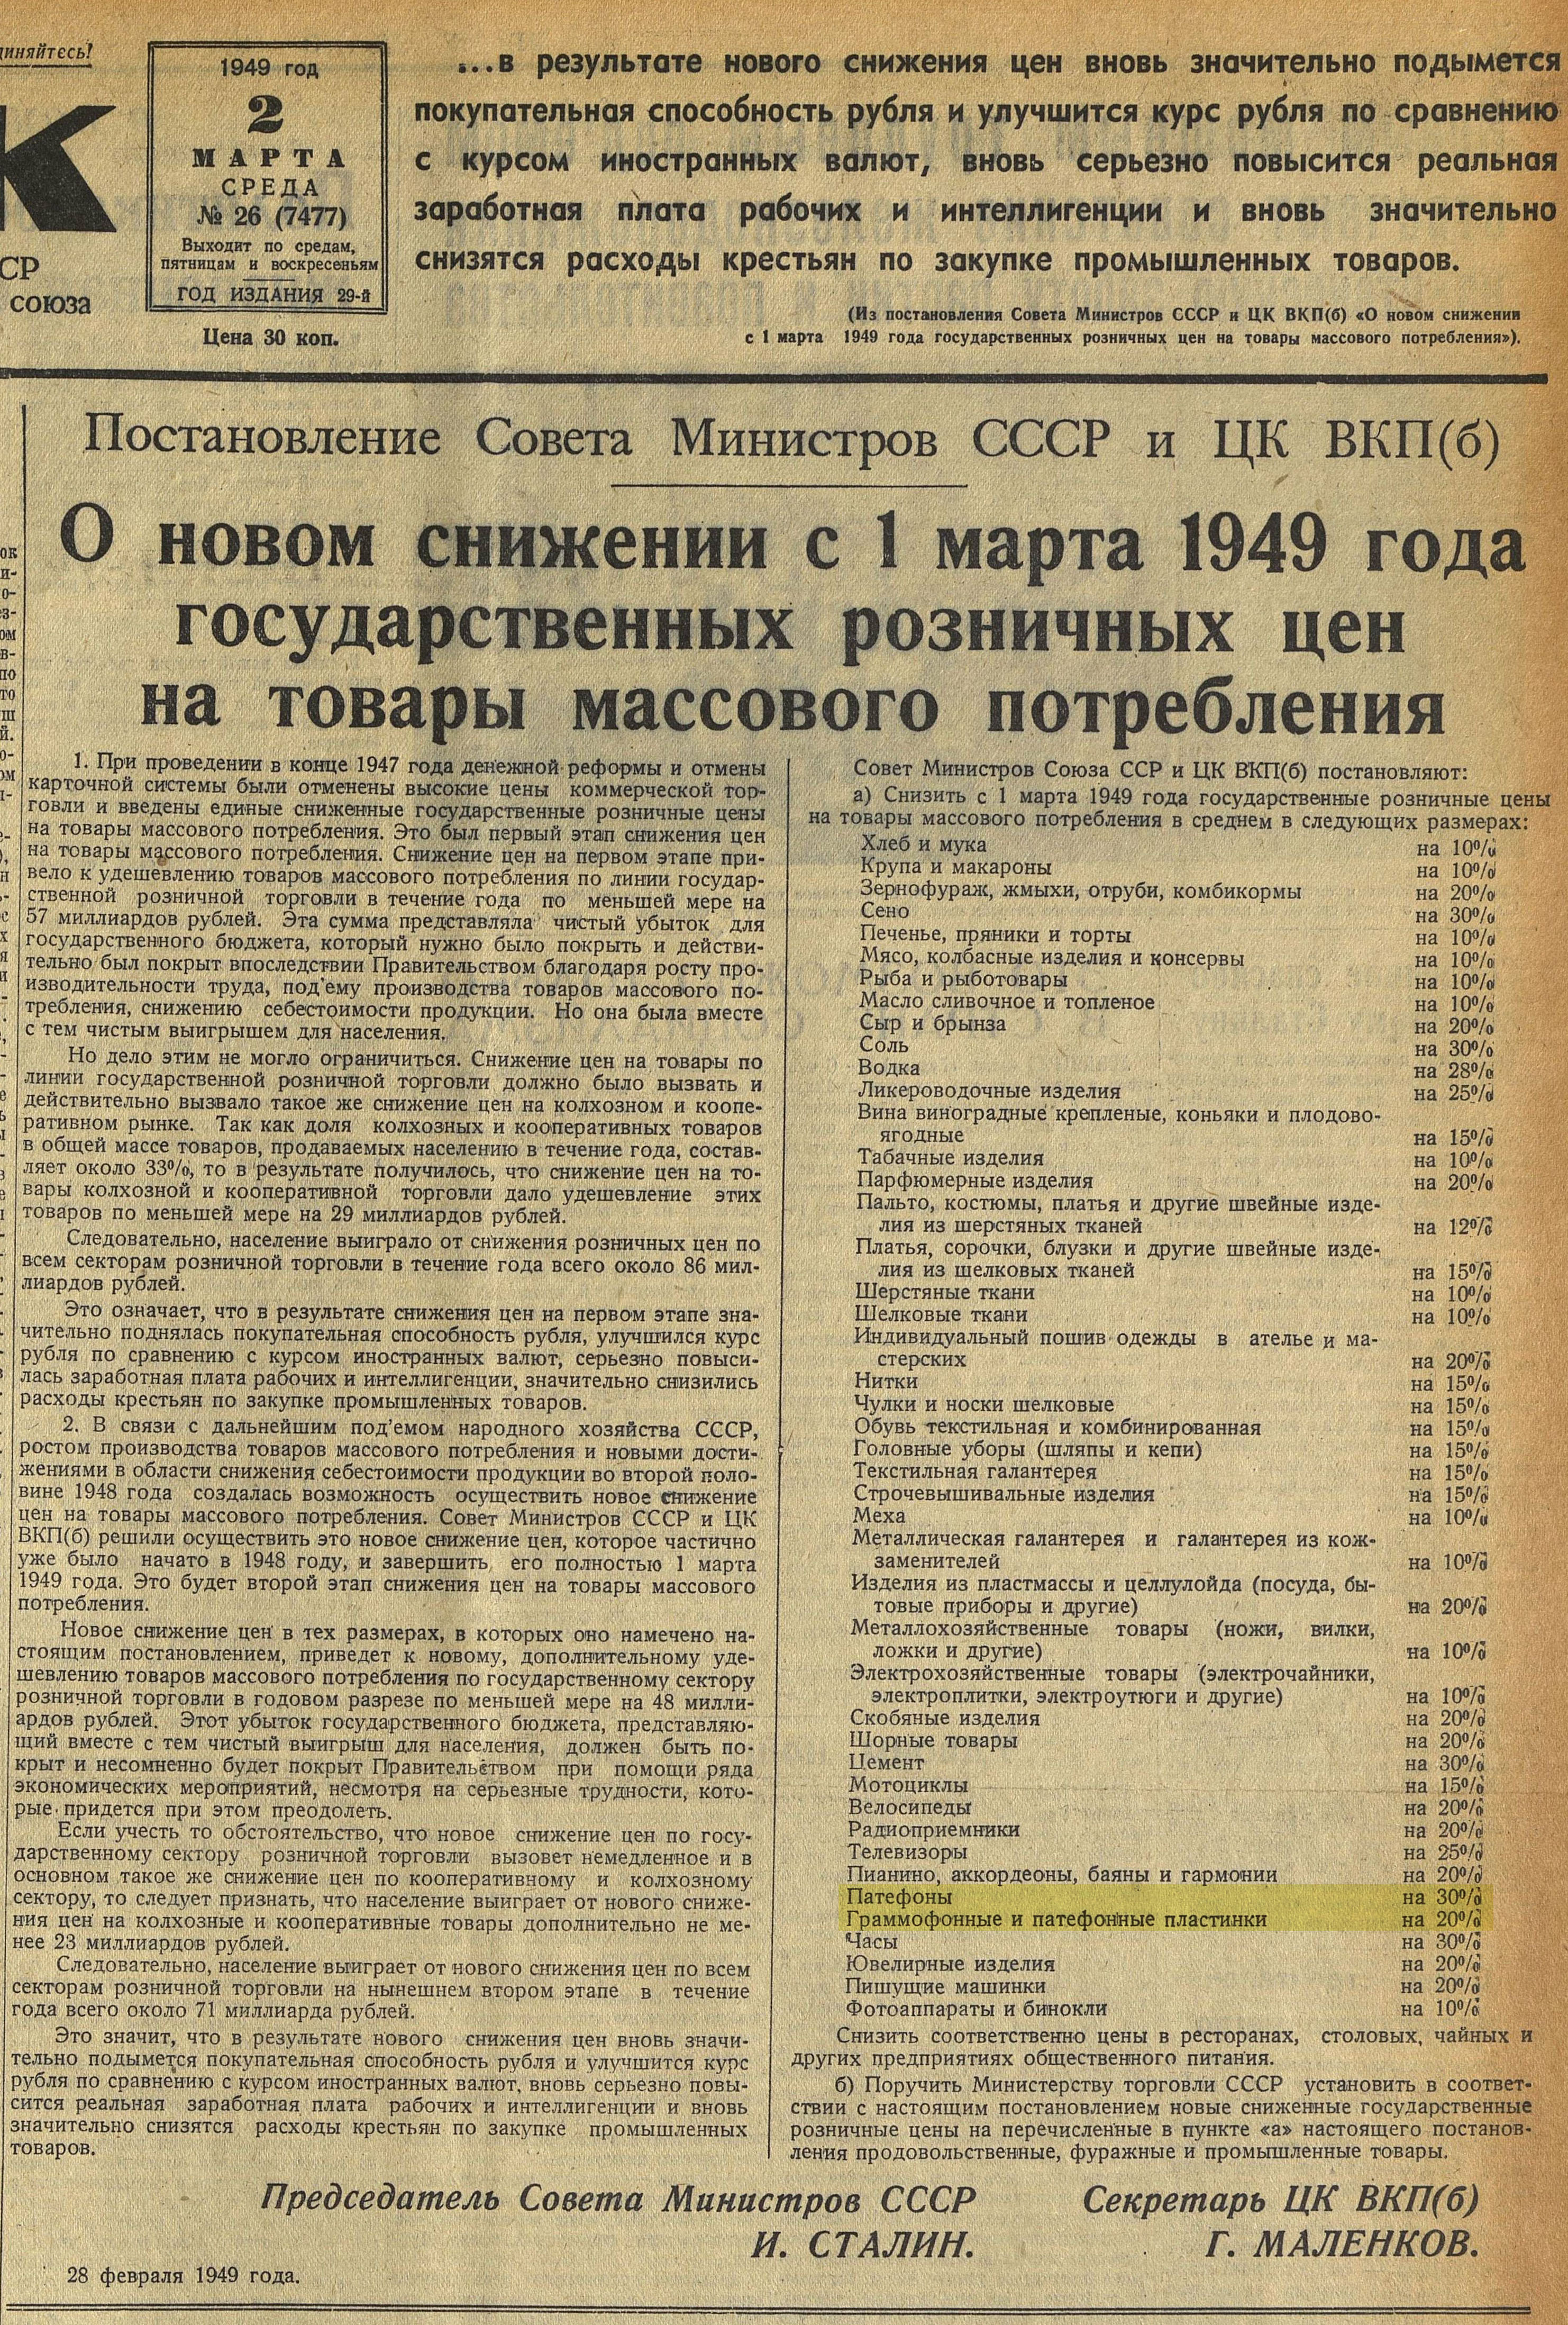 О новом снижении с 1 марта 1949 года государственных розничных цен на товары массового потребления